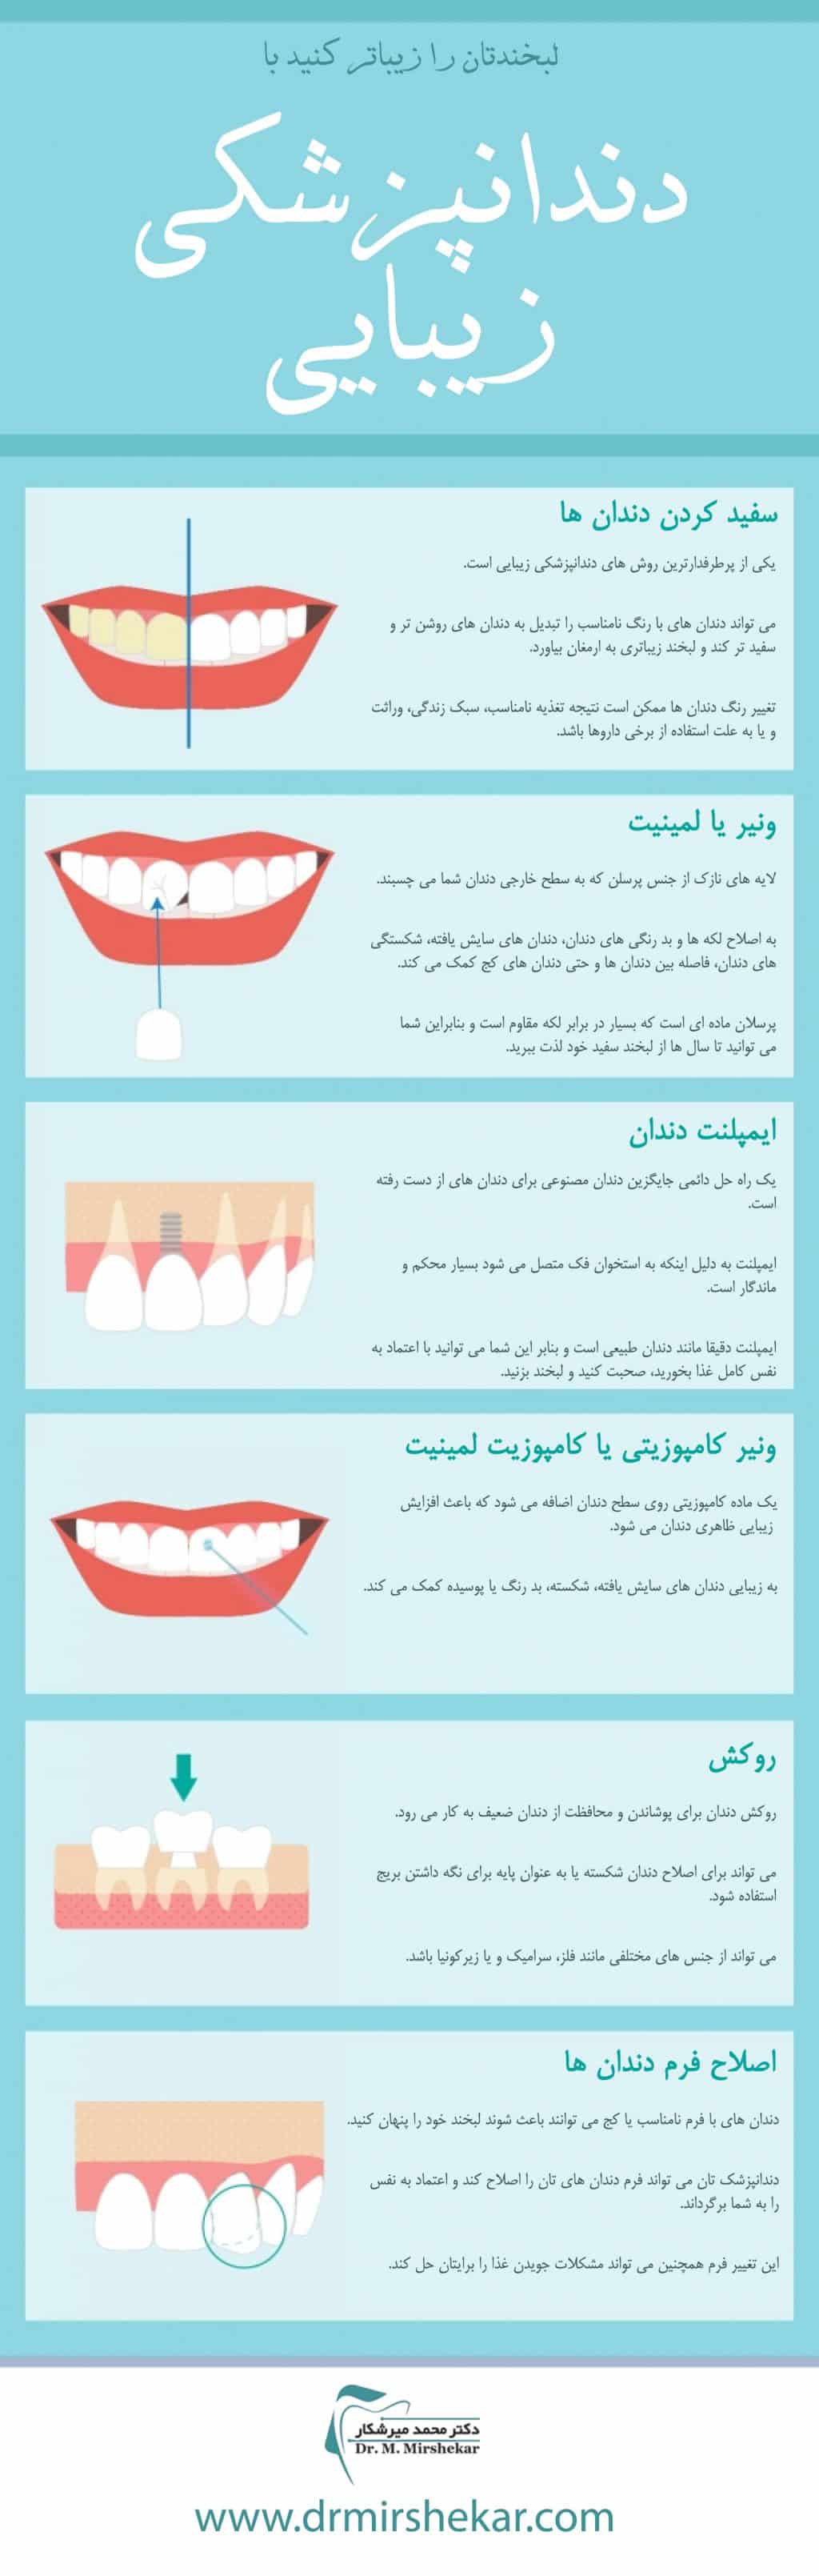 روش های درمانی اصلاح طرح لبخند دندان